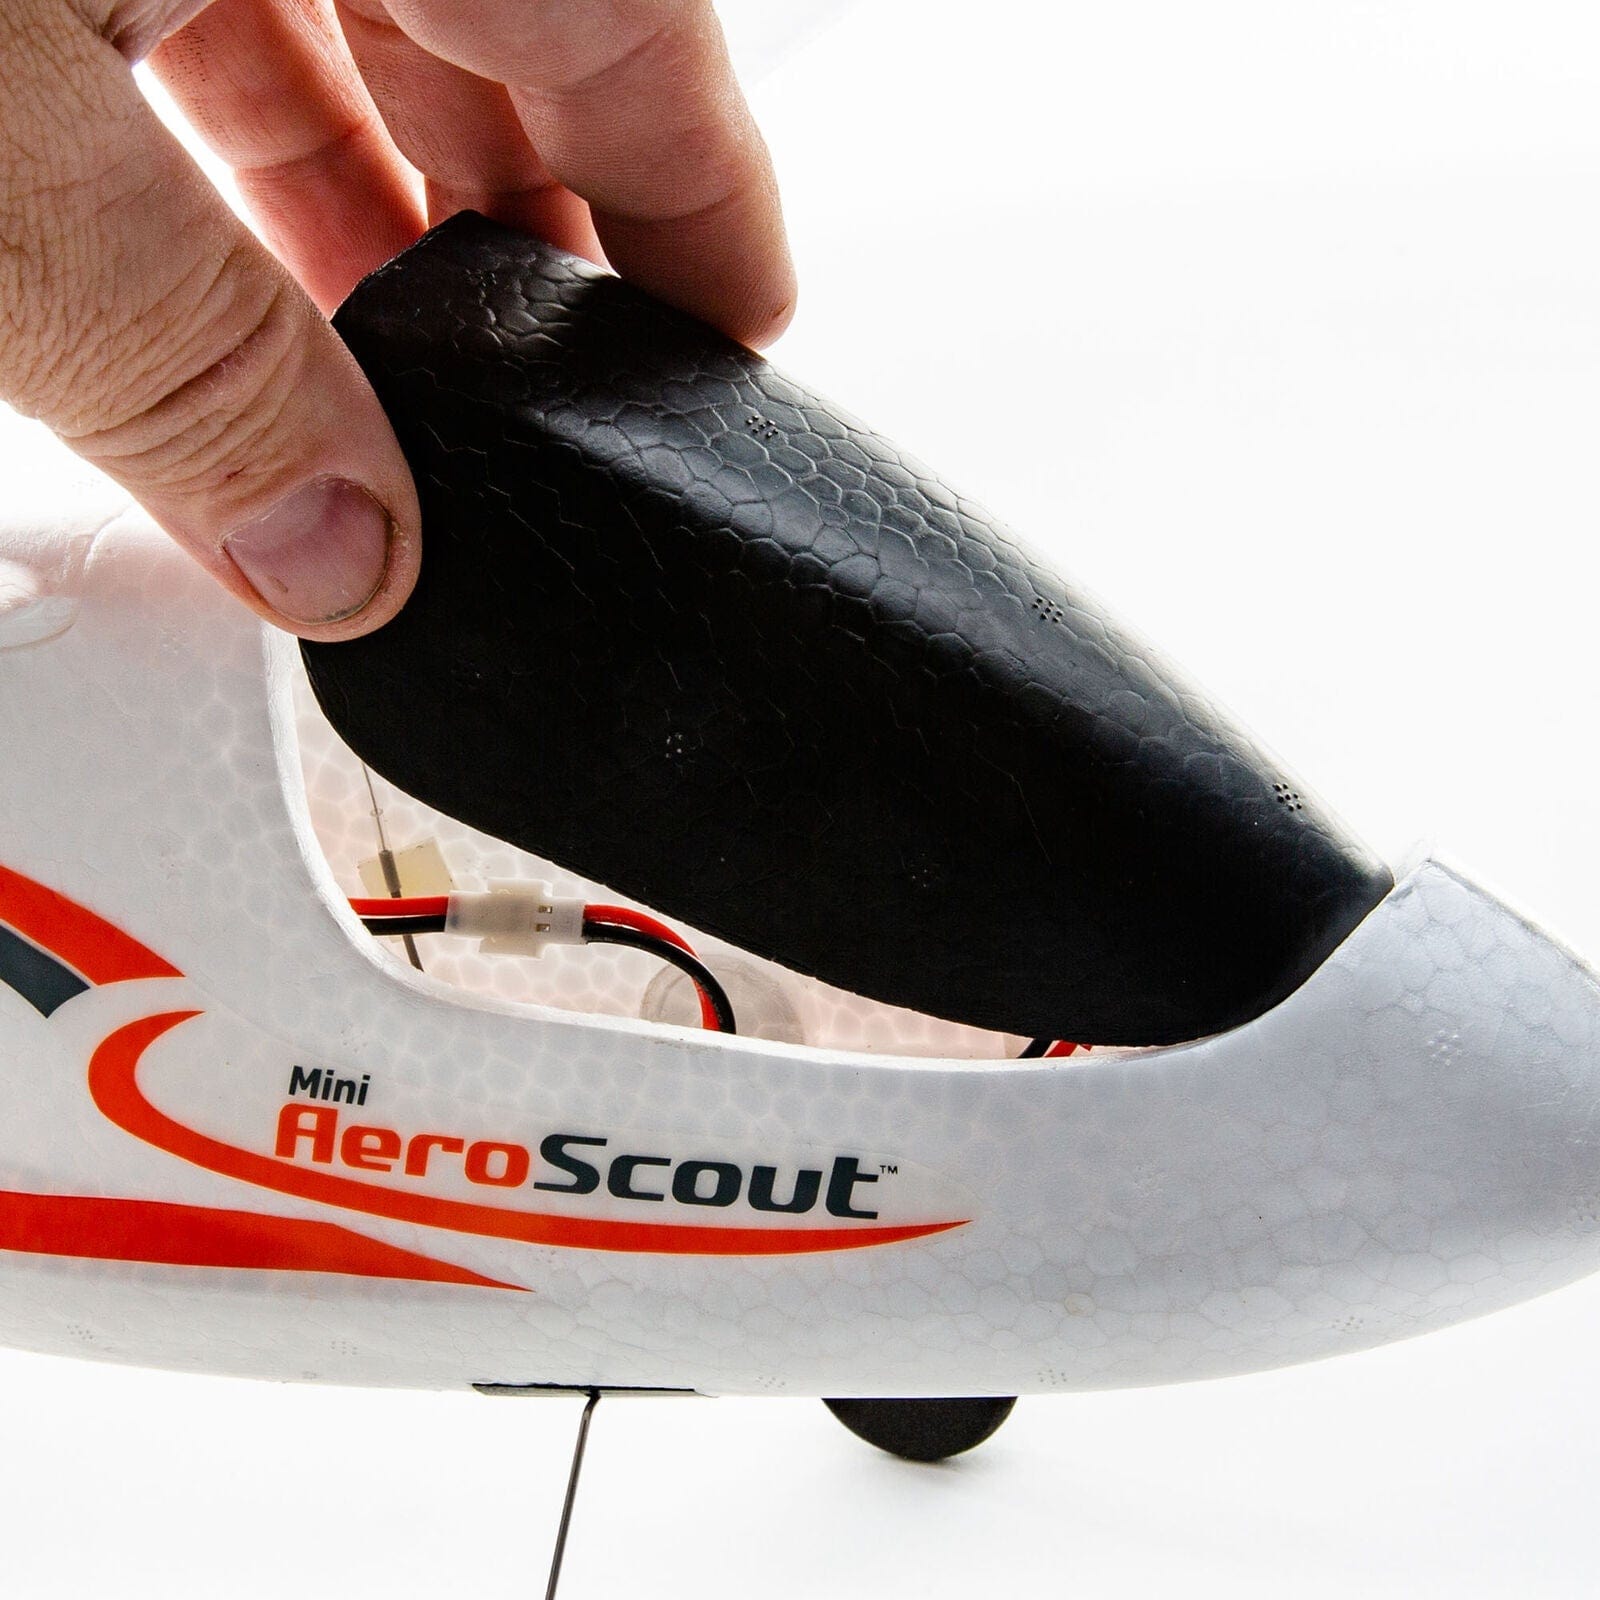 HobbyZone® Mini AeroScout RTF